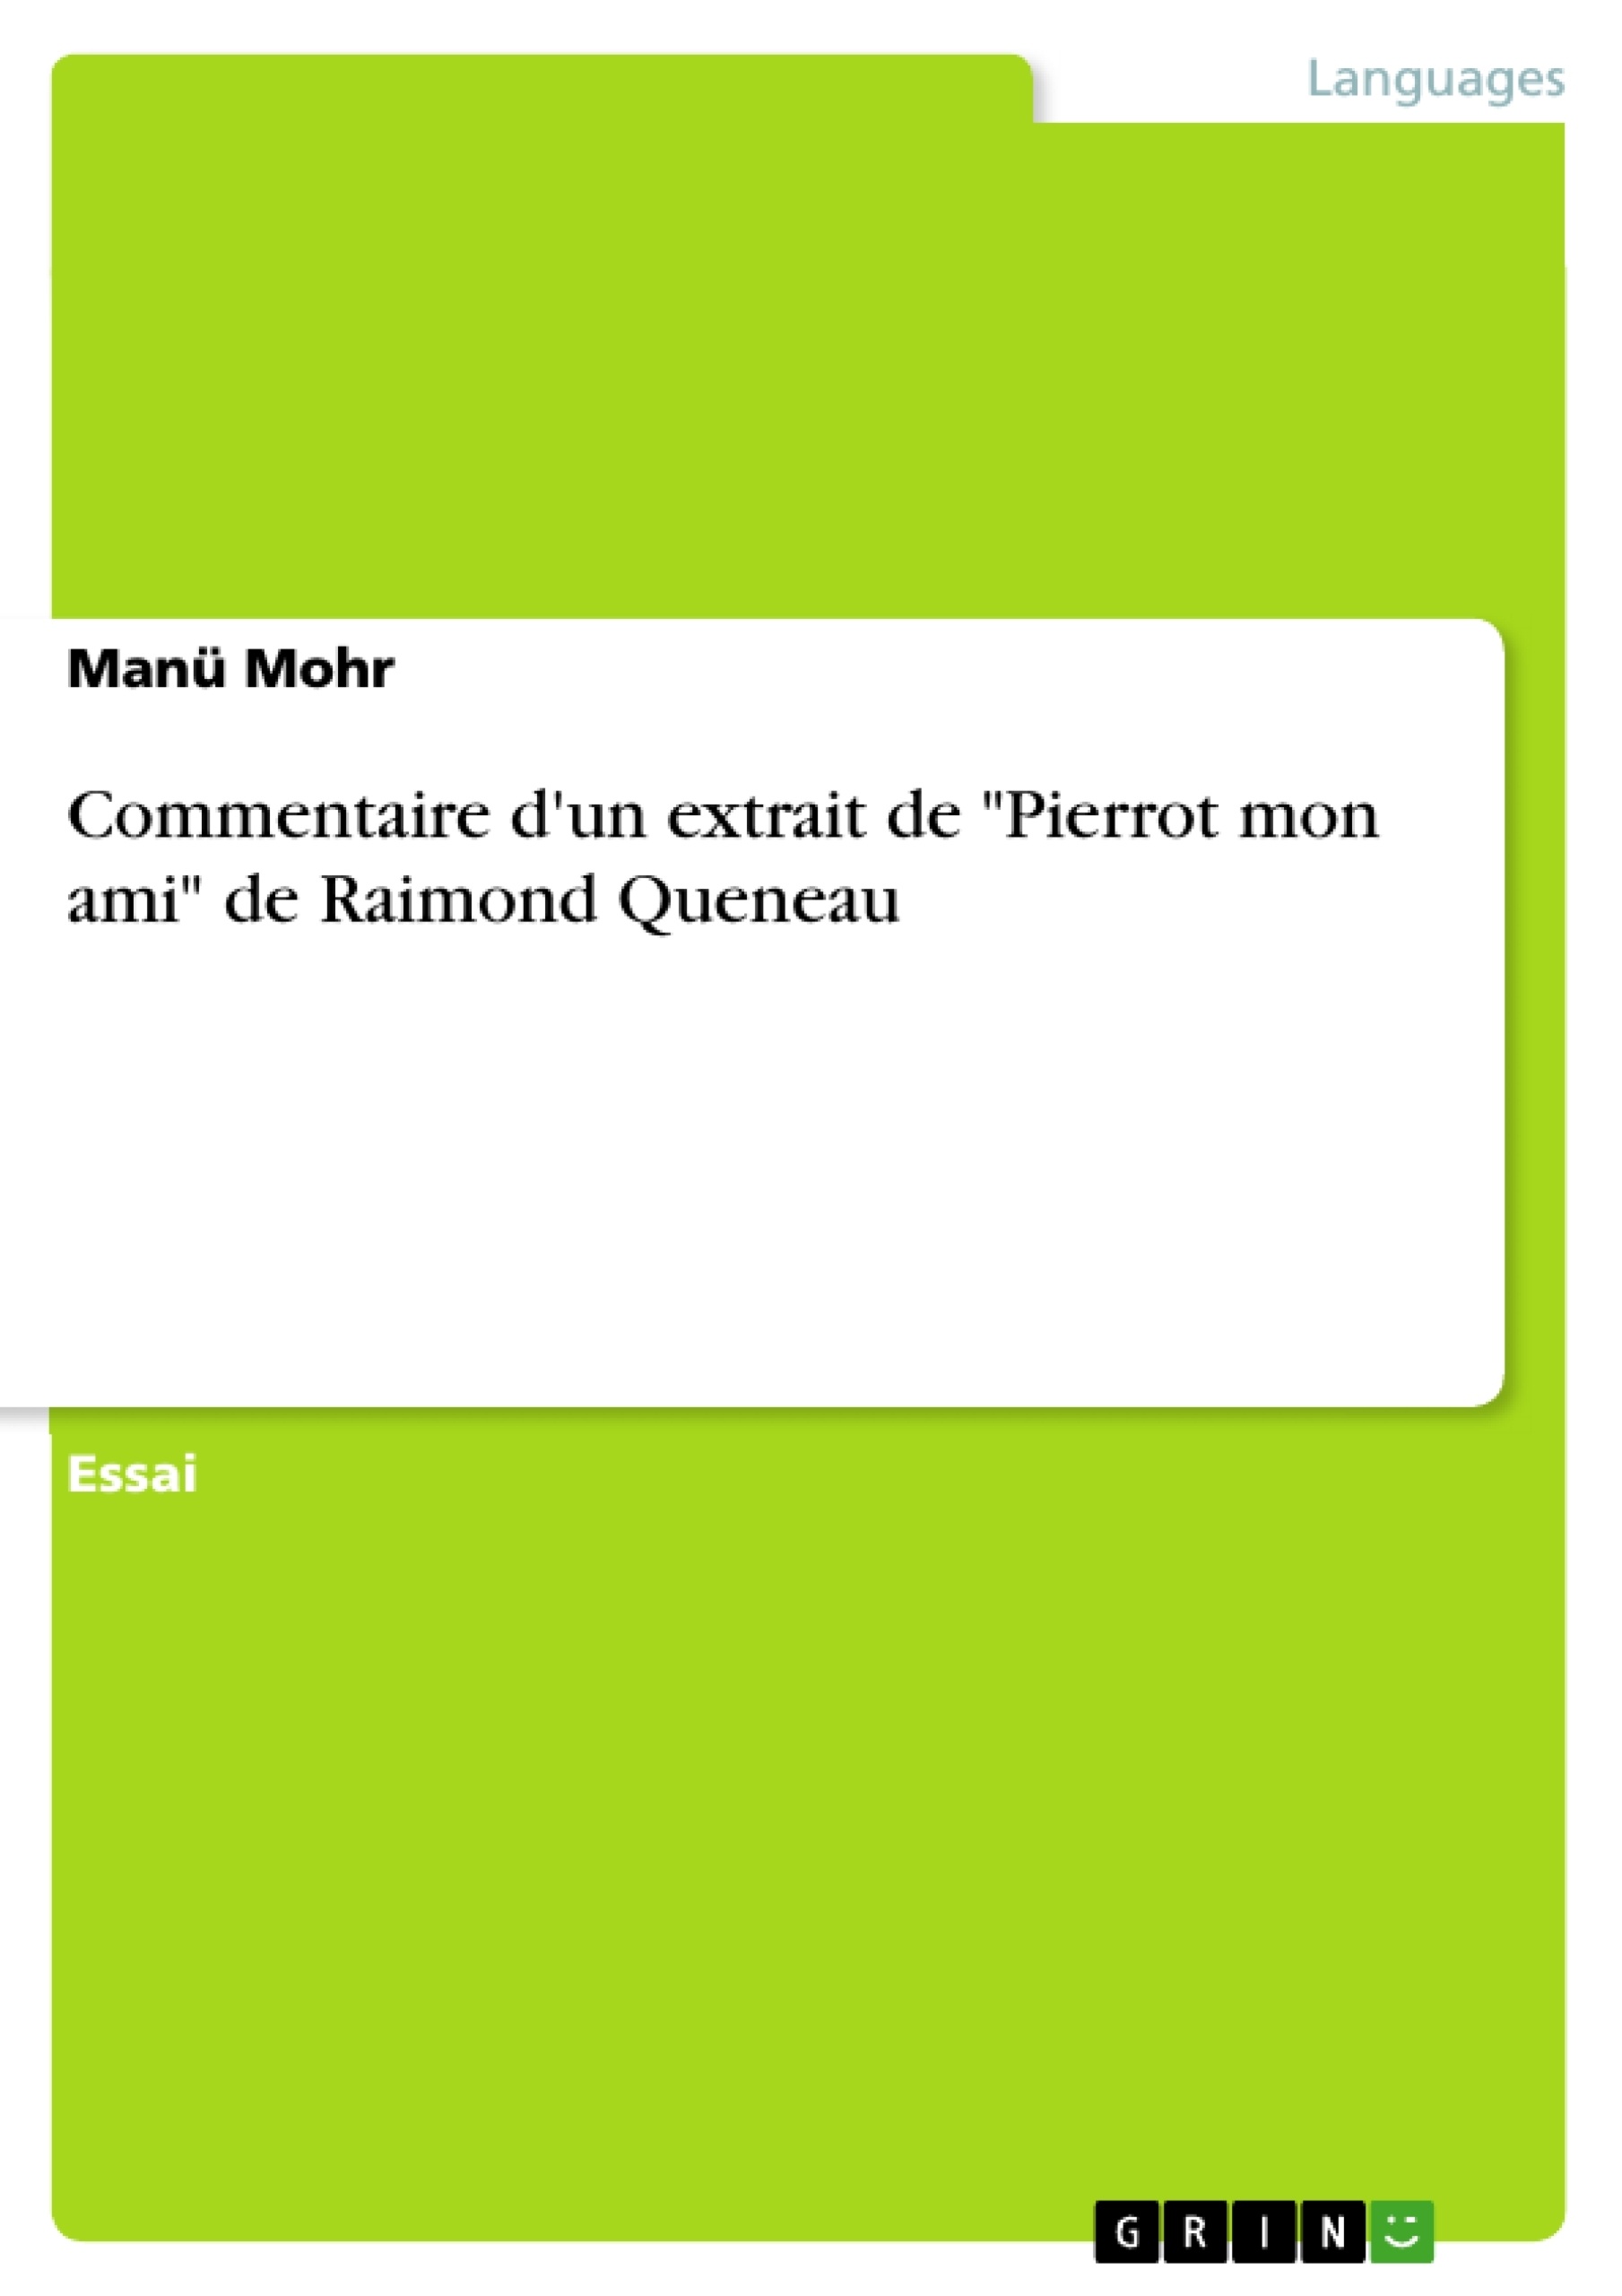 Título: Commentaire d'un extrait de "Pierrot mon ami" de Raimond Queneau